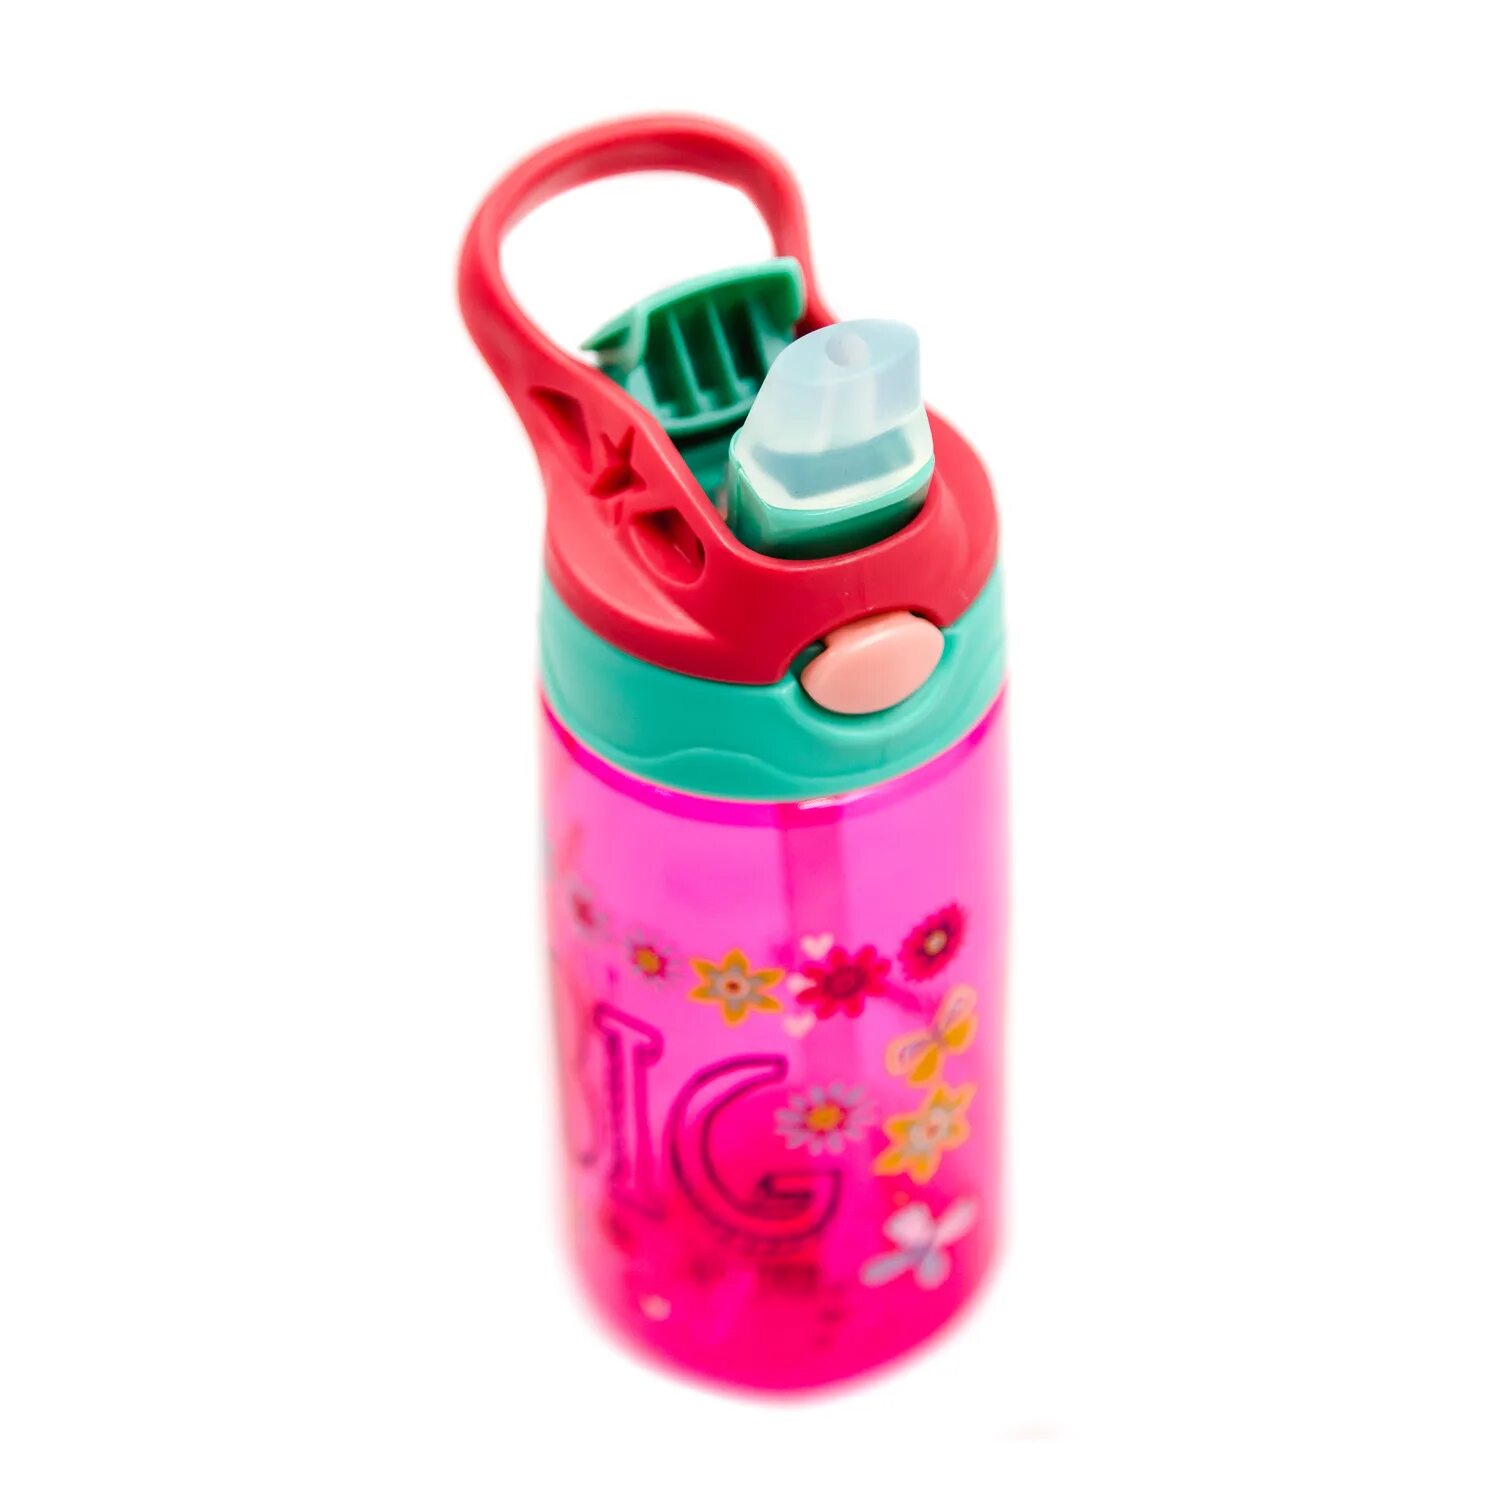 Бутылочка с трубочкой. Детский набор. Бутылка для воды с трубочкой diller 8800 450 ml (розовый). Бутилка для воды детске. Ребенок с бутылкой воды. Бутылка для воды детская с трубочкой.